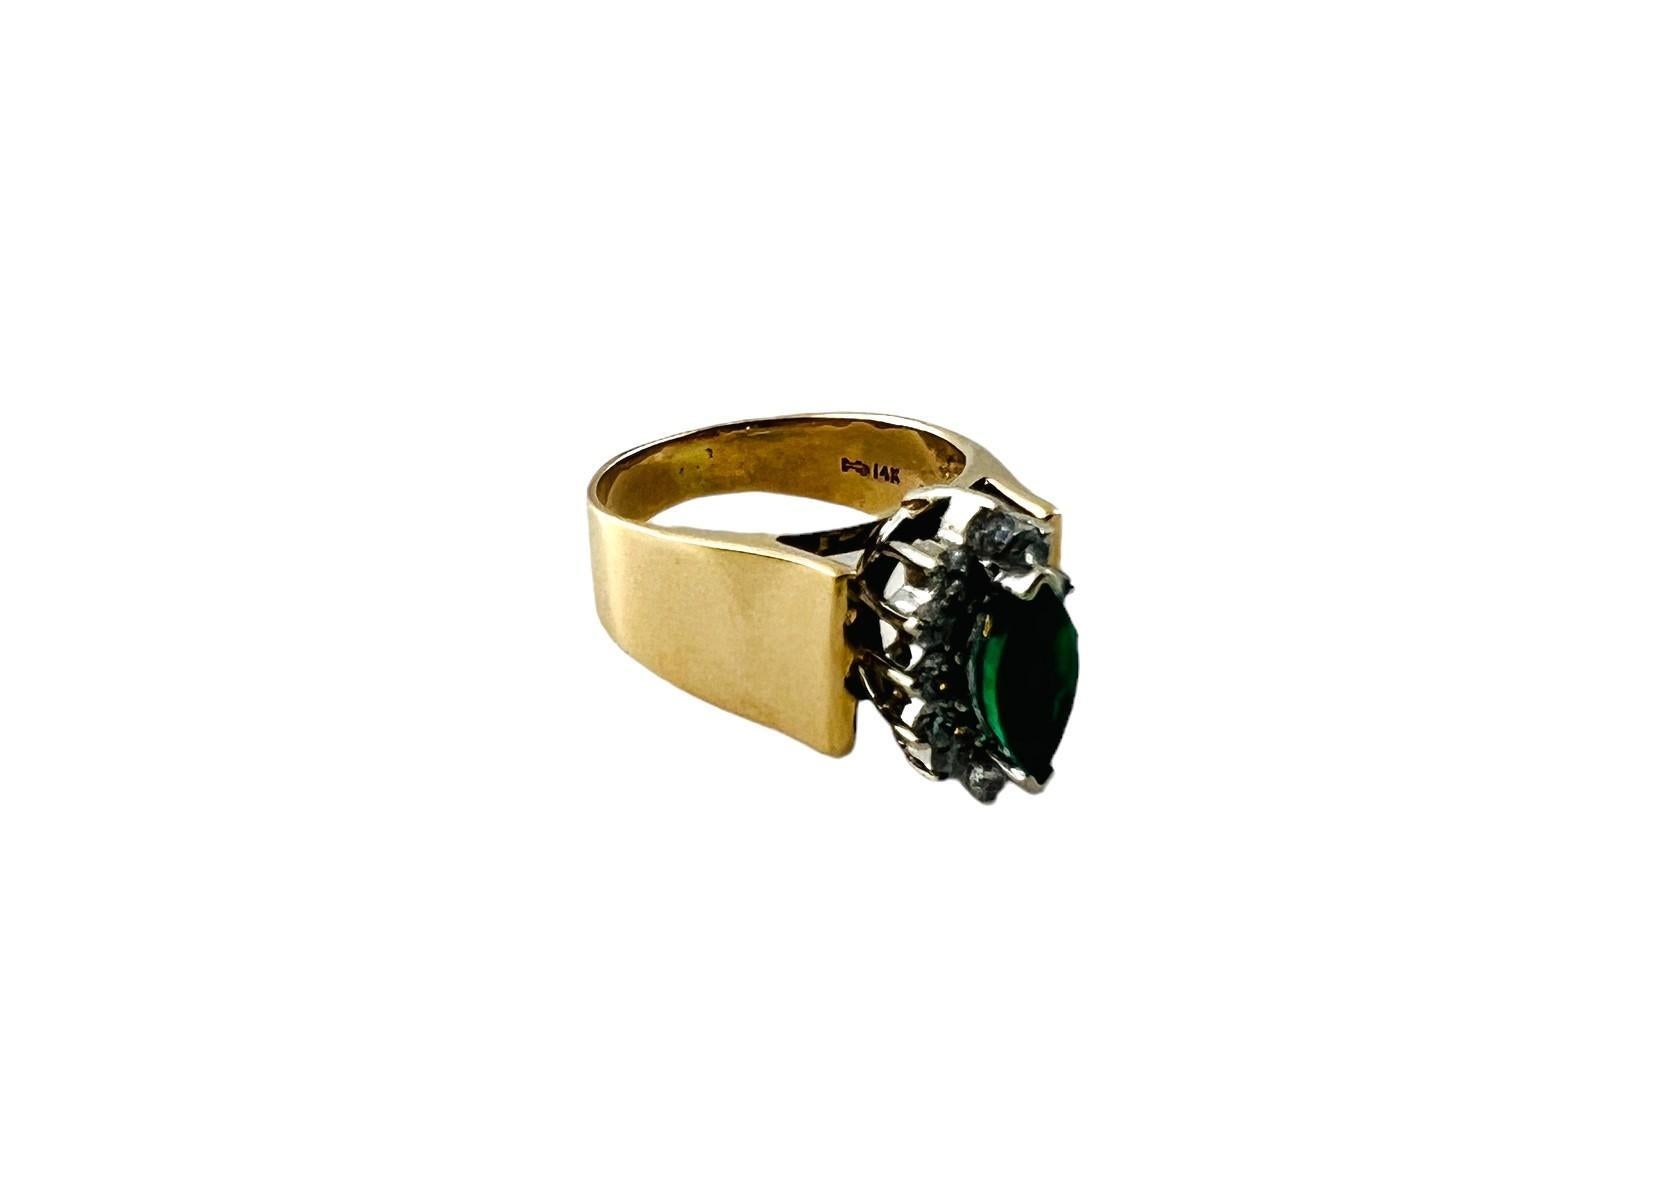 Vintage 14K Gelbgold natürlichen Smaragd und Diamant-Ring Größe 5,5

Dieser wunderschöne Ring aus 14-karätigem Gold hat ein wunderschönes Design mit 12 runden Diamanten im Brillantschliff, die einen funkelnden, natürlichen grünen Smaragd in der